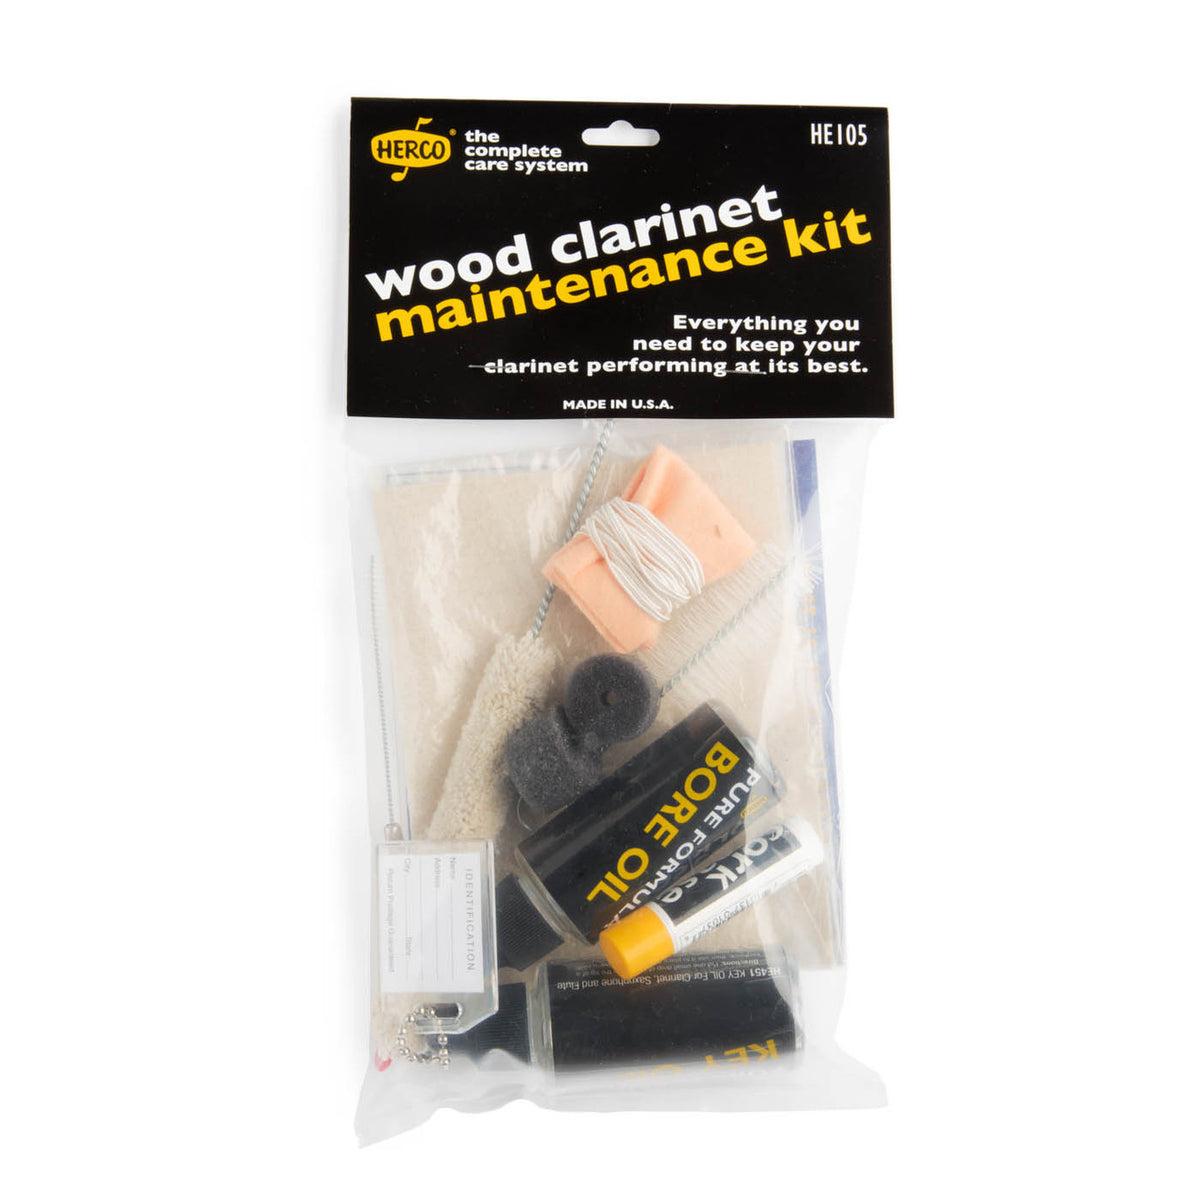 Herco Wood Clarinet Maintenance Kit